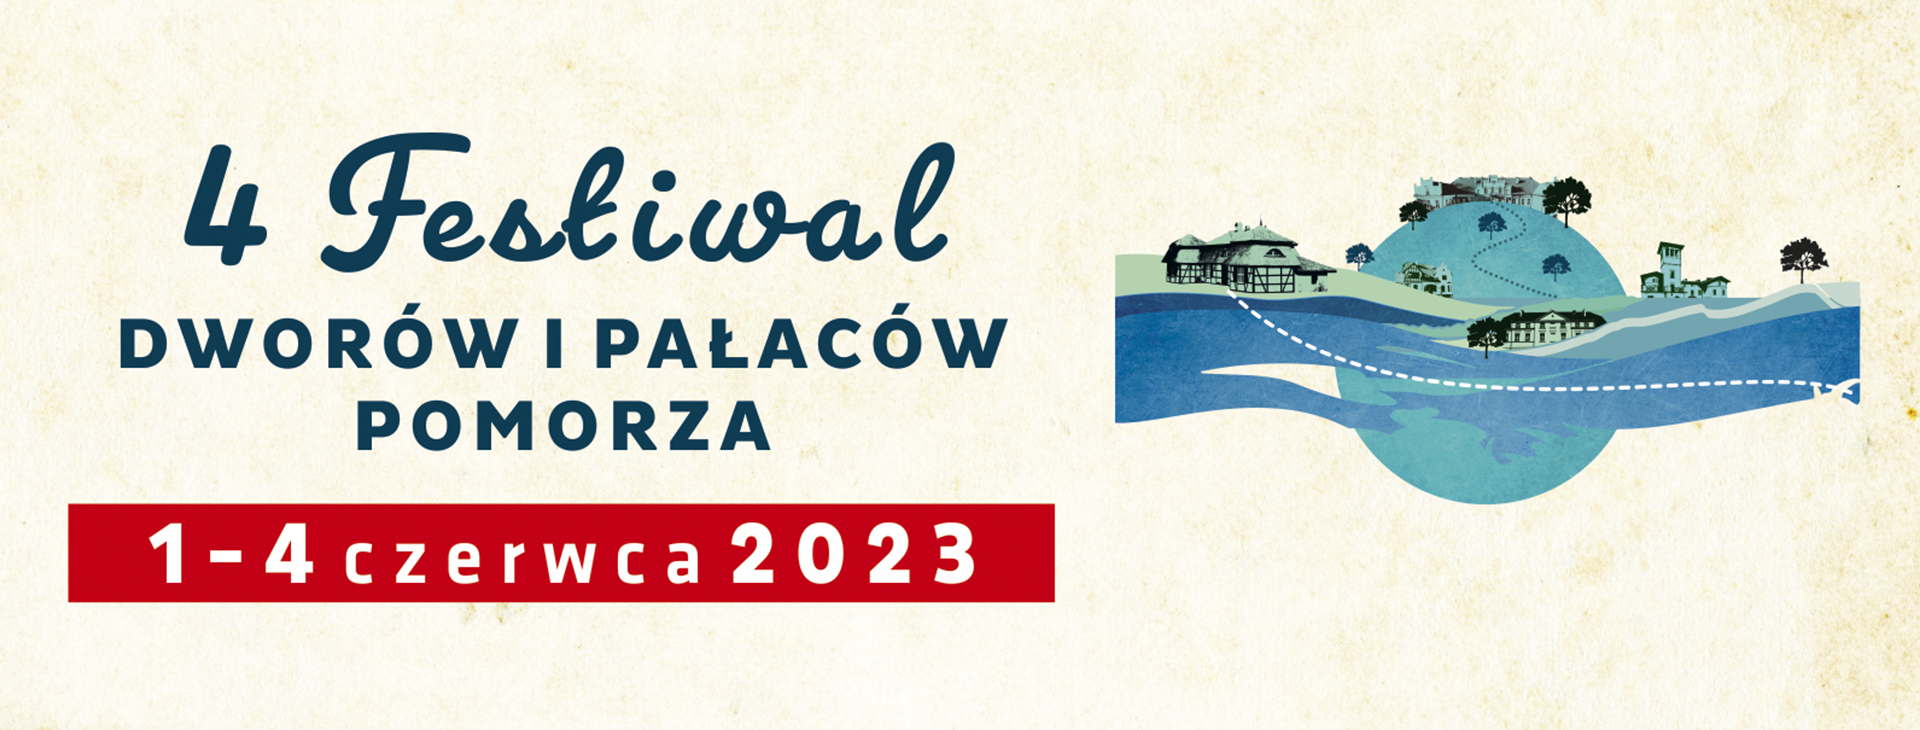 4 festiwal dworów i pałaców pomorza 2023